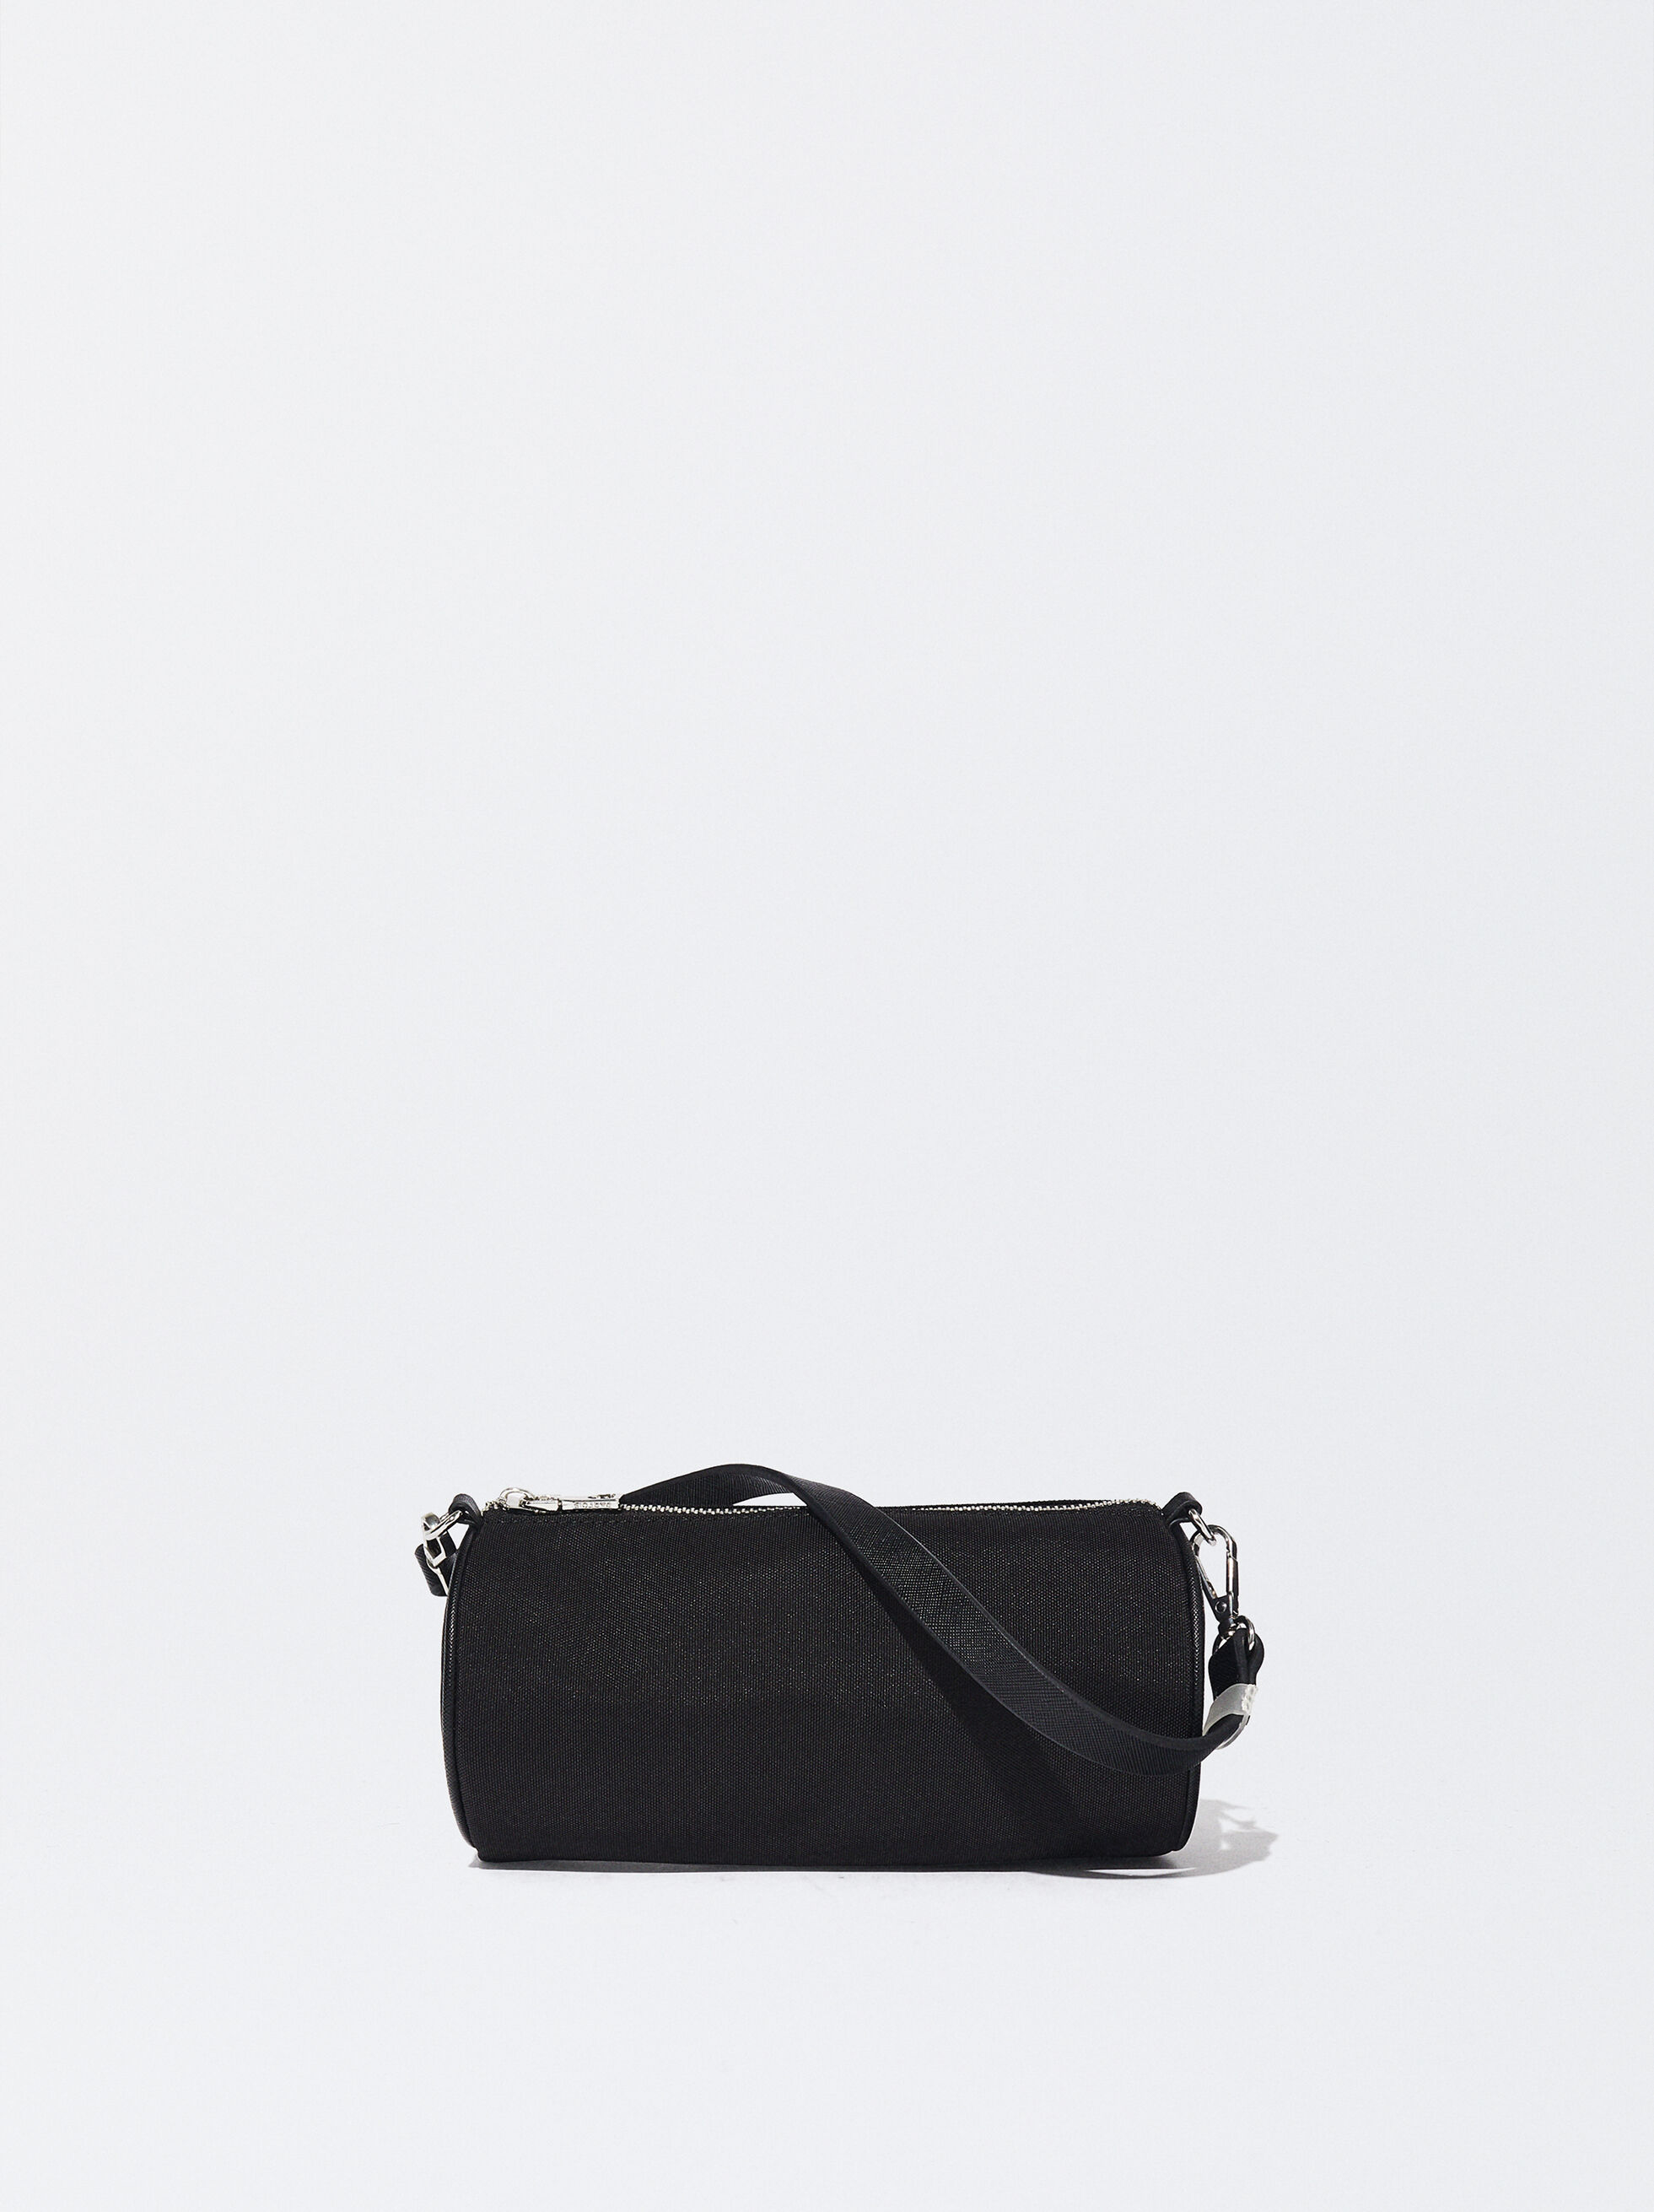 Túi đeo chéo SWE NYLON SHOULDER BAG Black phụ kiện nhỏ gọn tiện lợi